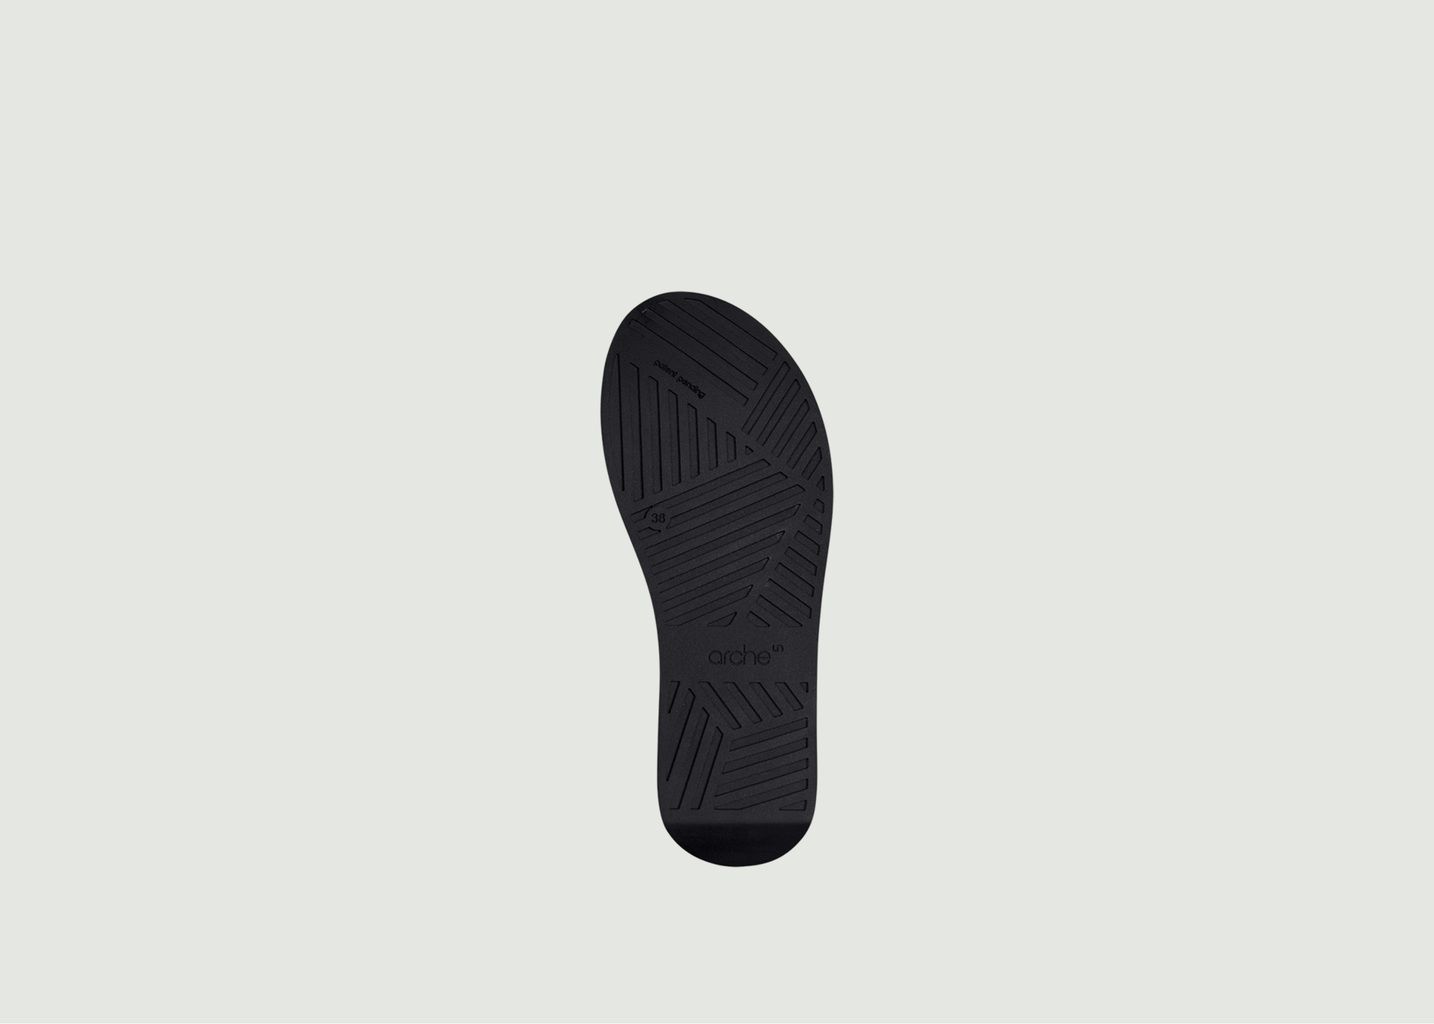 Myakki sandals - Arche